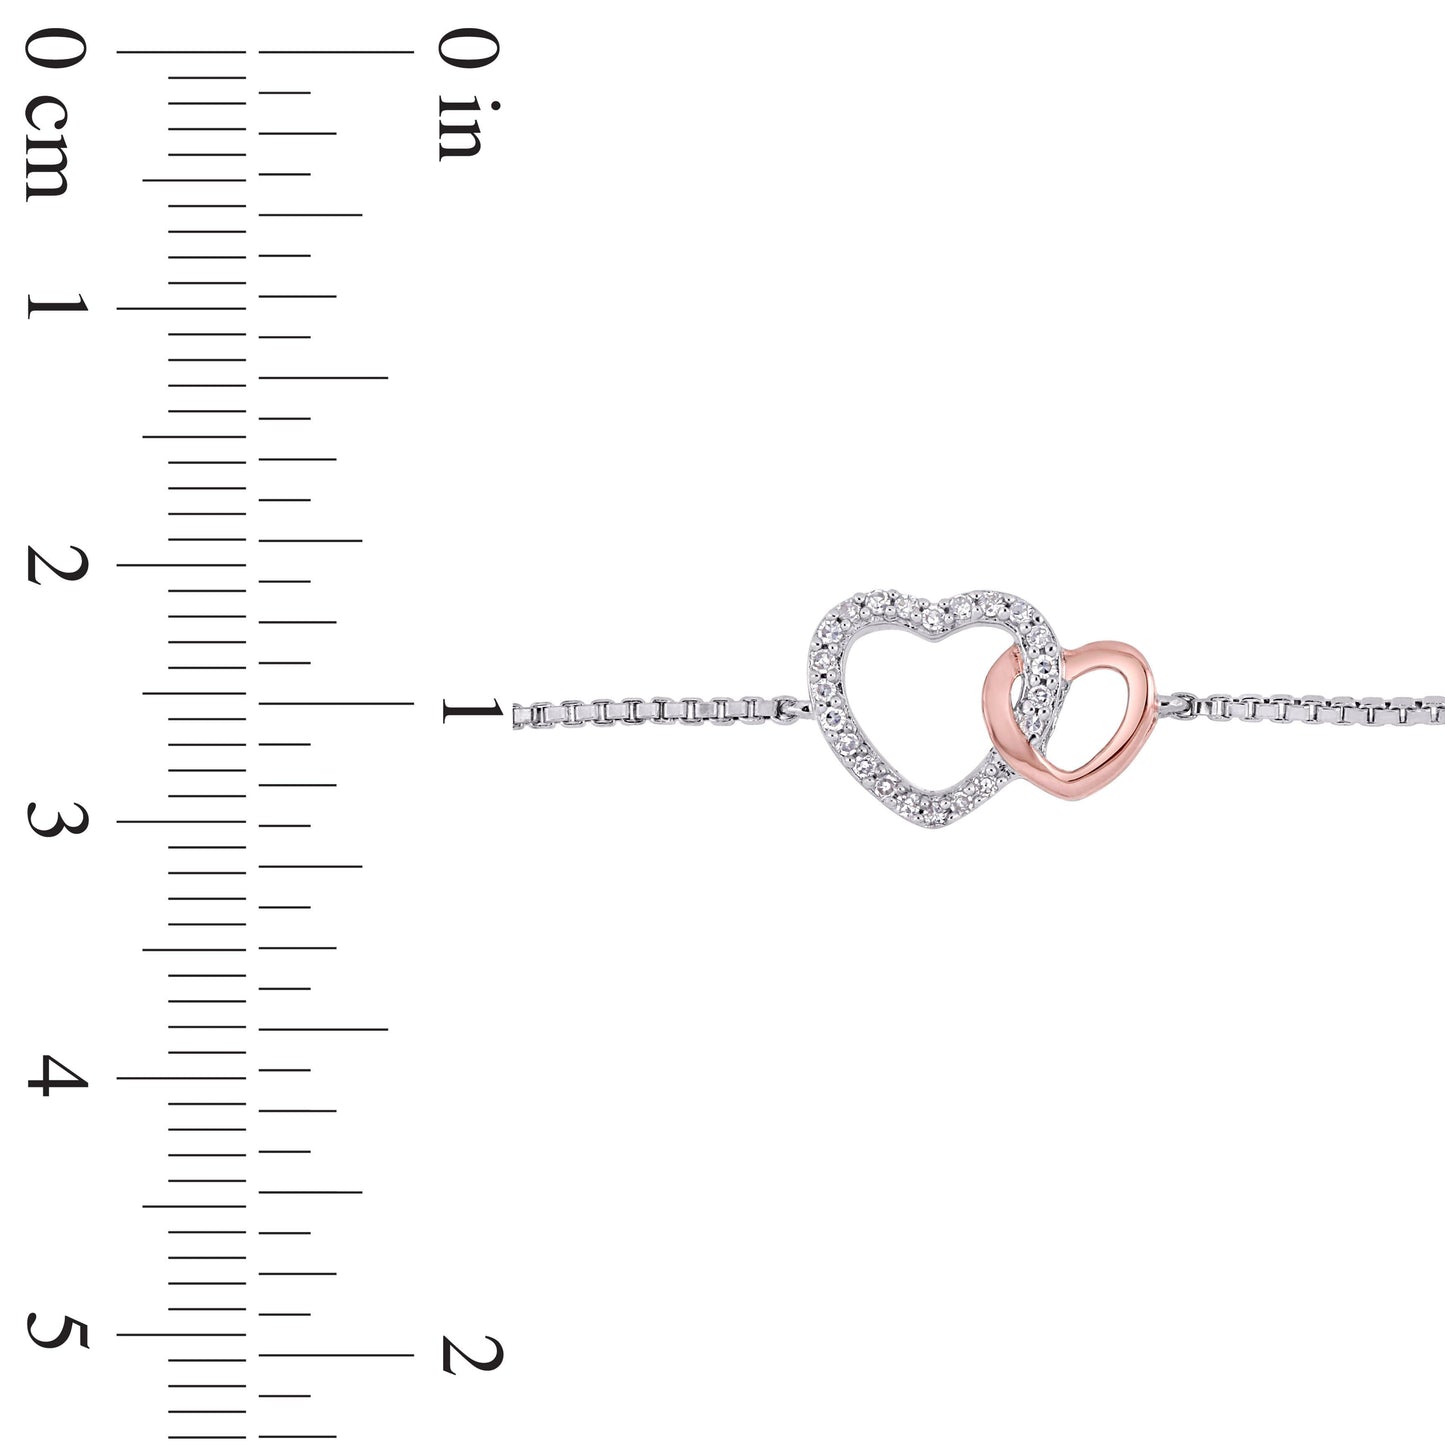 Julie Leah Diamond Heart Bracelet in 2-Tone Silver